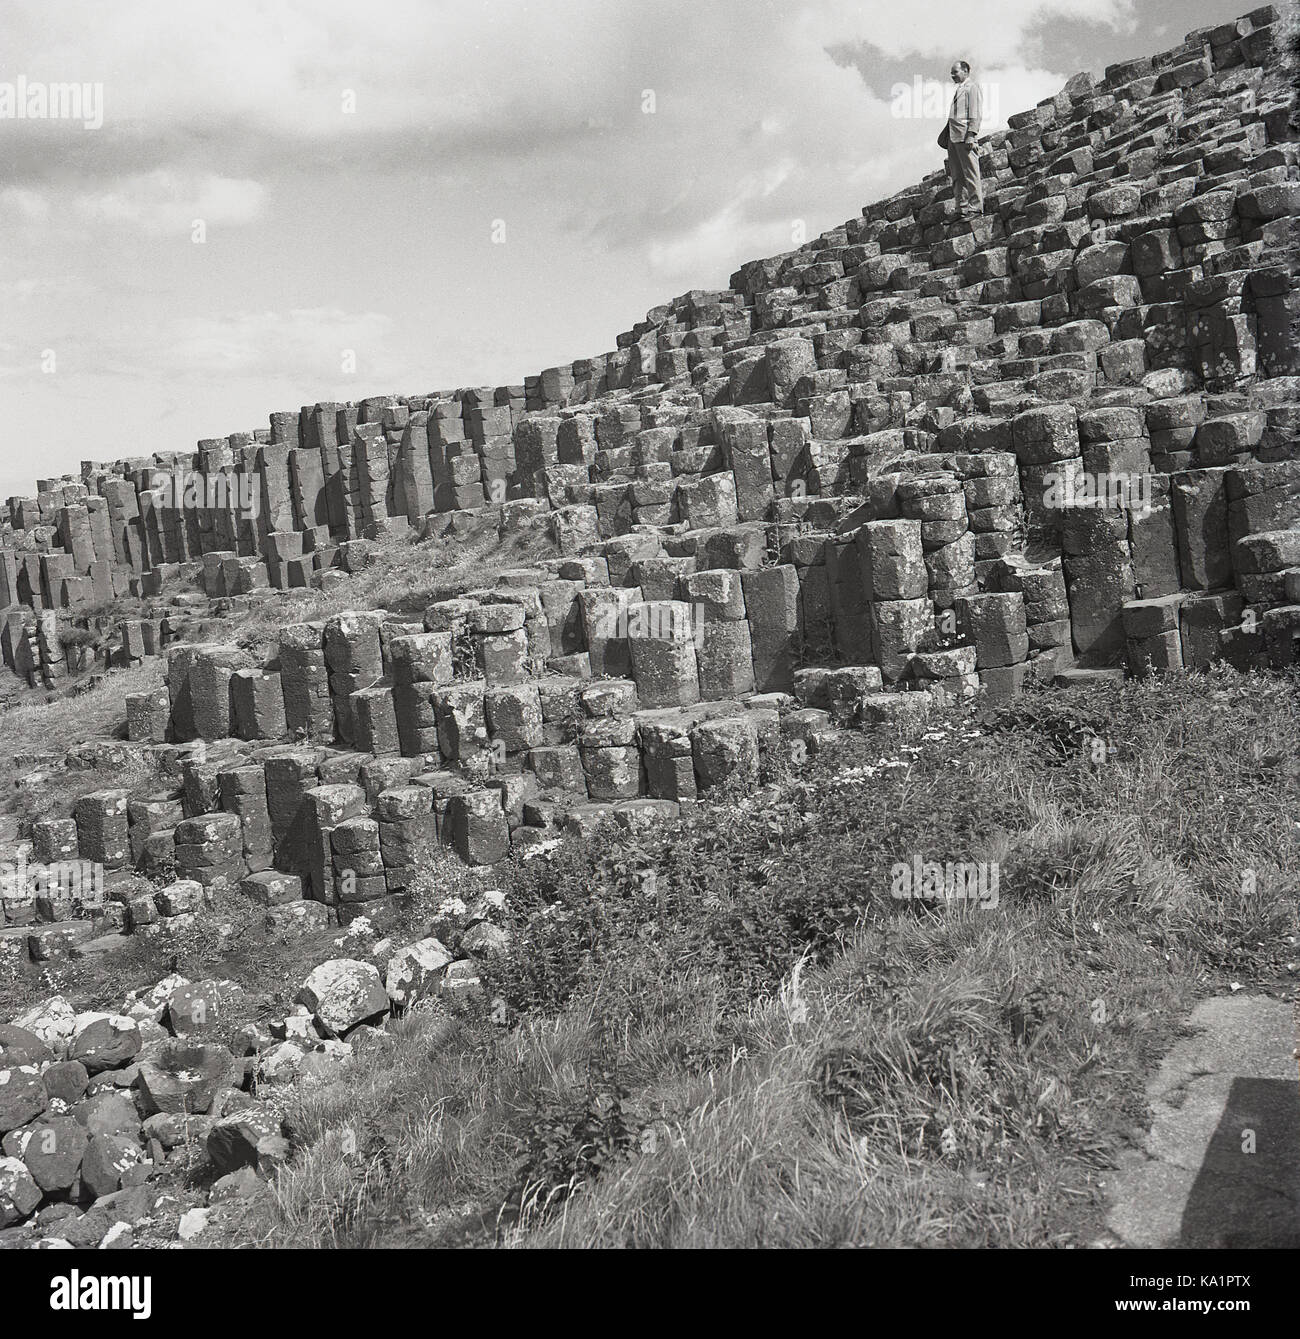 Années 1950, historique, un gentleman se tenant au-dessus des anciennes formations rocheuses volcaniques de colonnes de basalte imbriquées, à la célèbre chaussée des géants, sur la côte de l'Atlantique Nord, près de Bushmills, Co Antrim, Irlande du Nord, Royaume-Uni. Banque D'Images